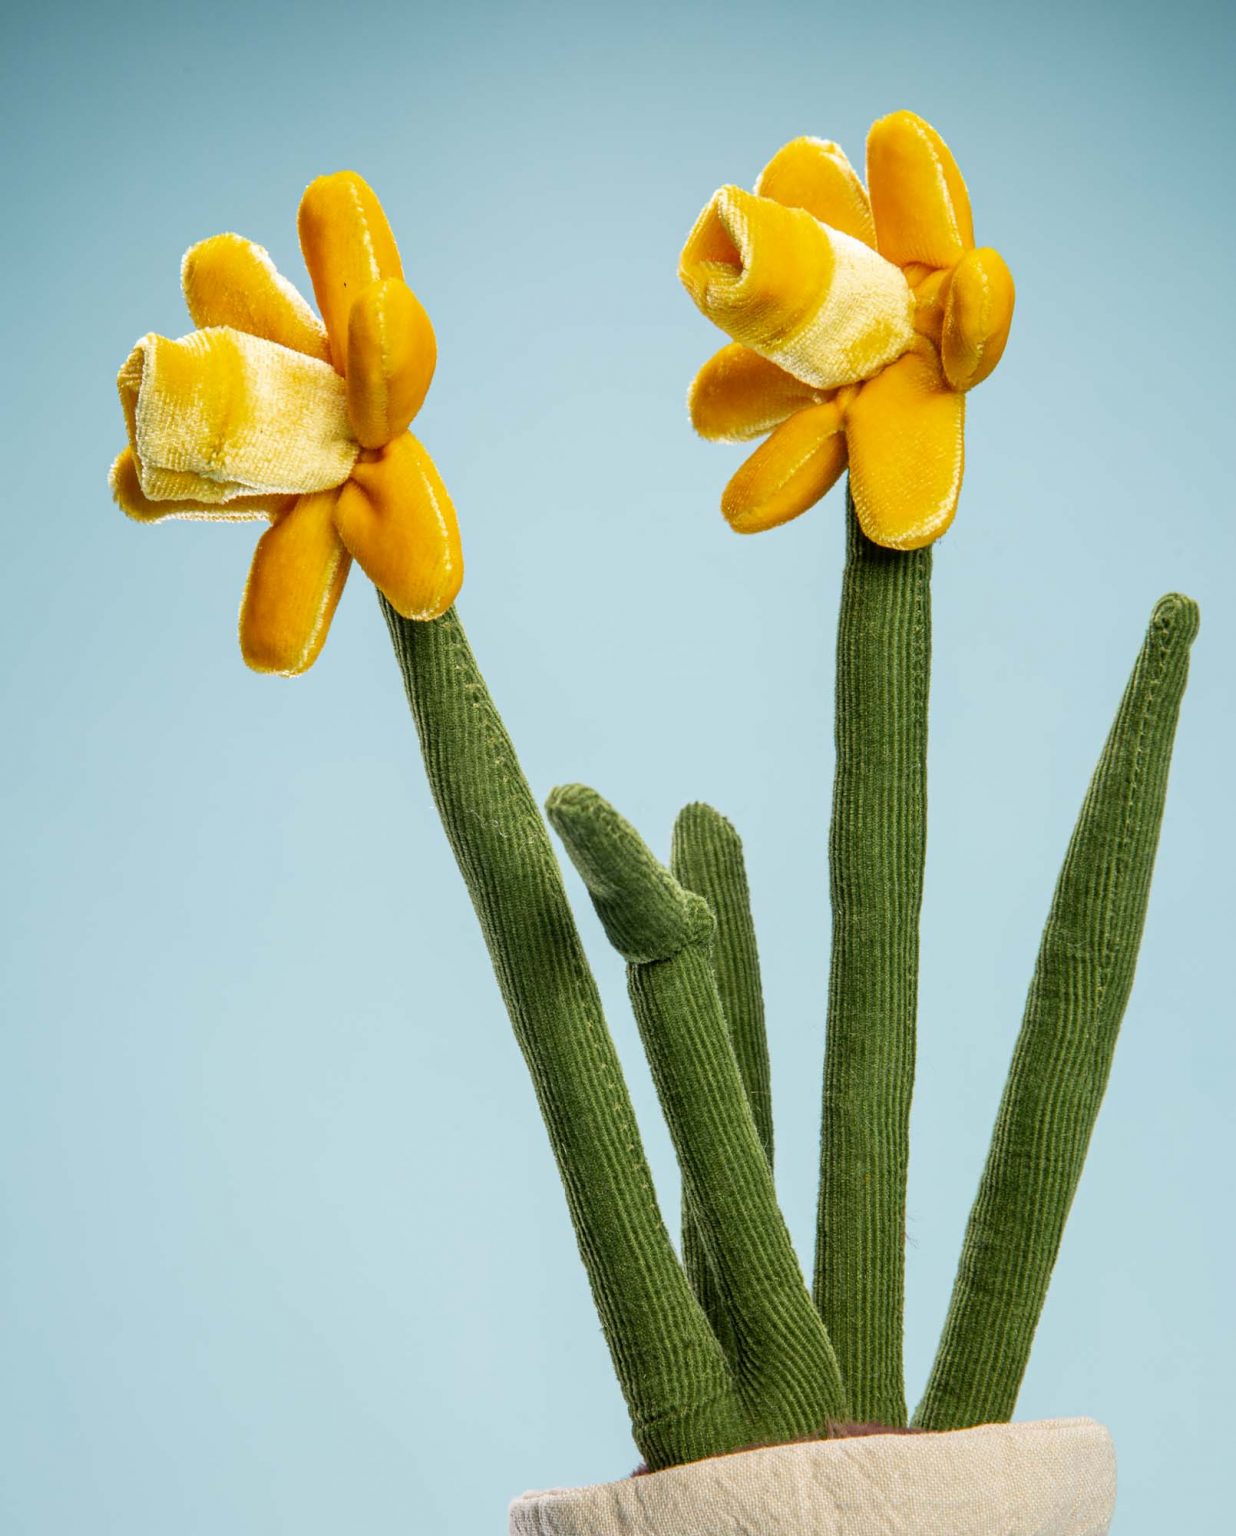 Daffodil flower soft toy gift